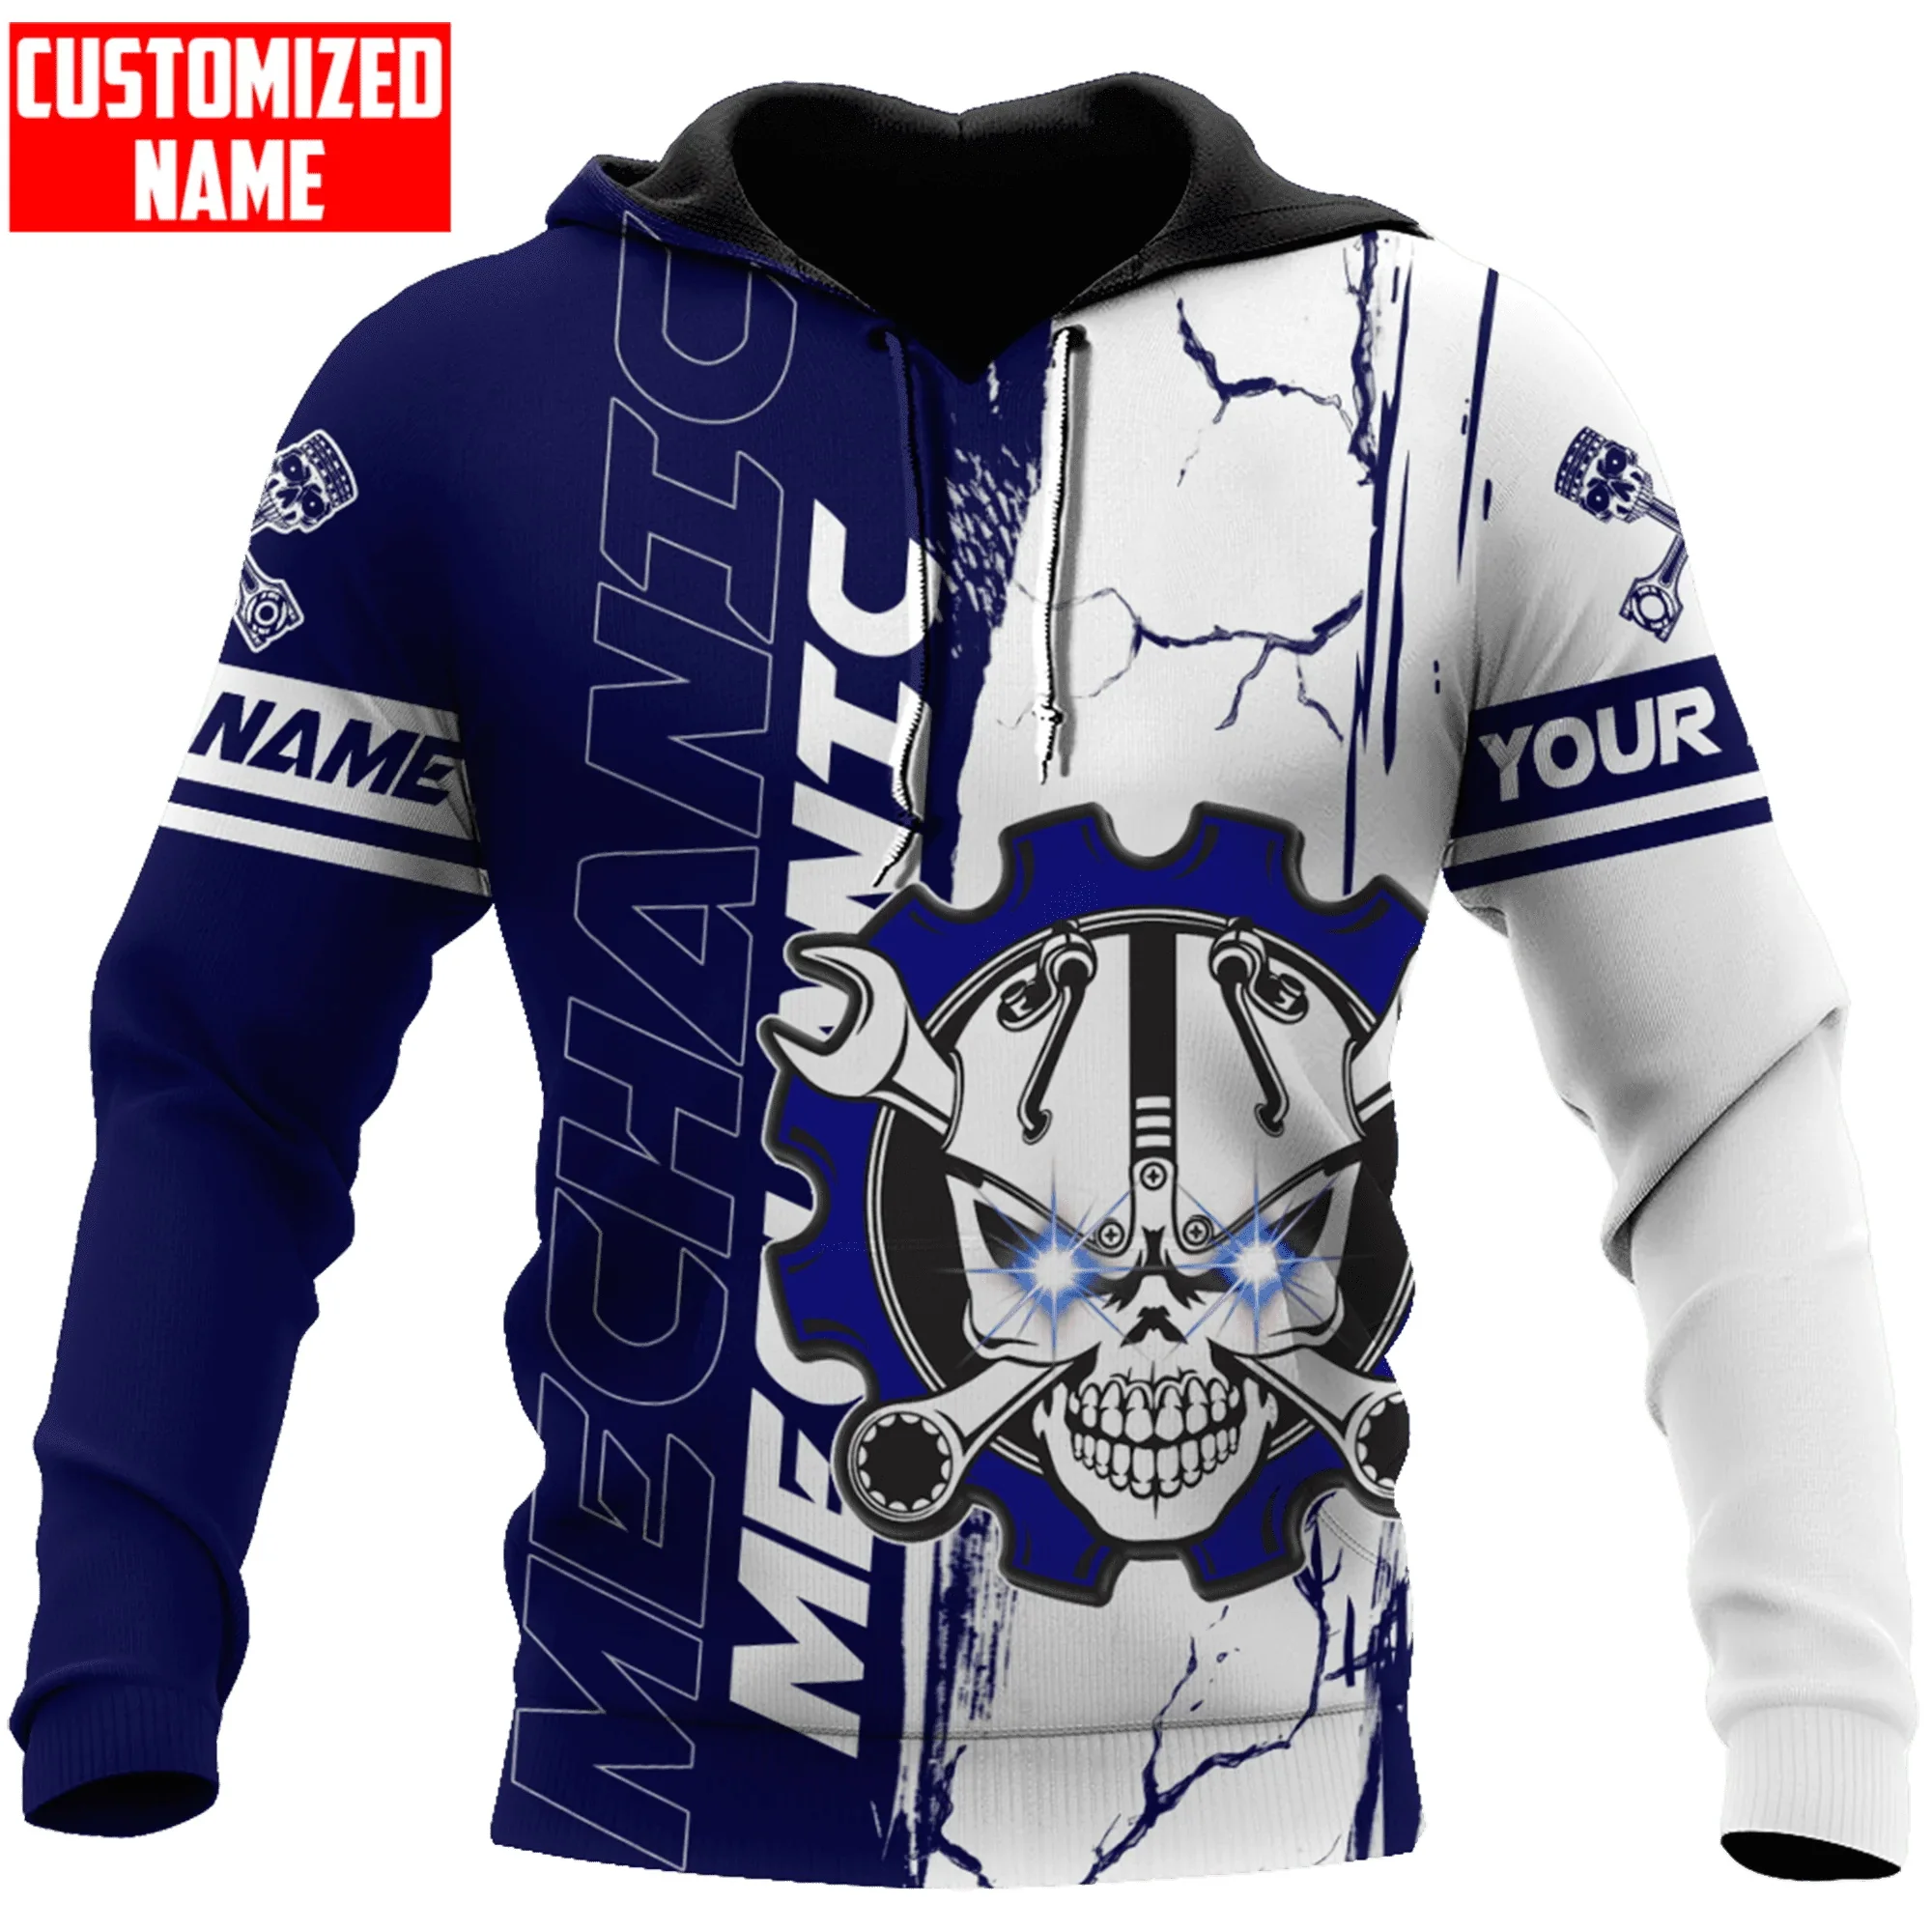 PLstar Cosmos Personalized Mechanic Wrench Gear Wheel Skull 3D Printed Men's Hoodie & Sweatshirt Unisex Casual zip hoodies DK541